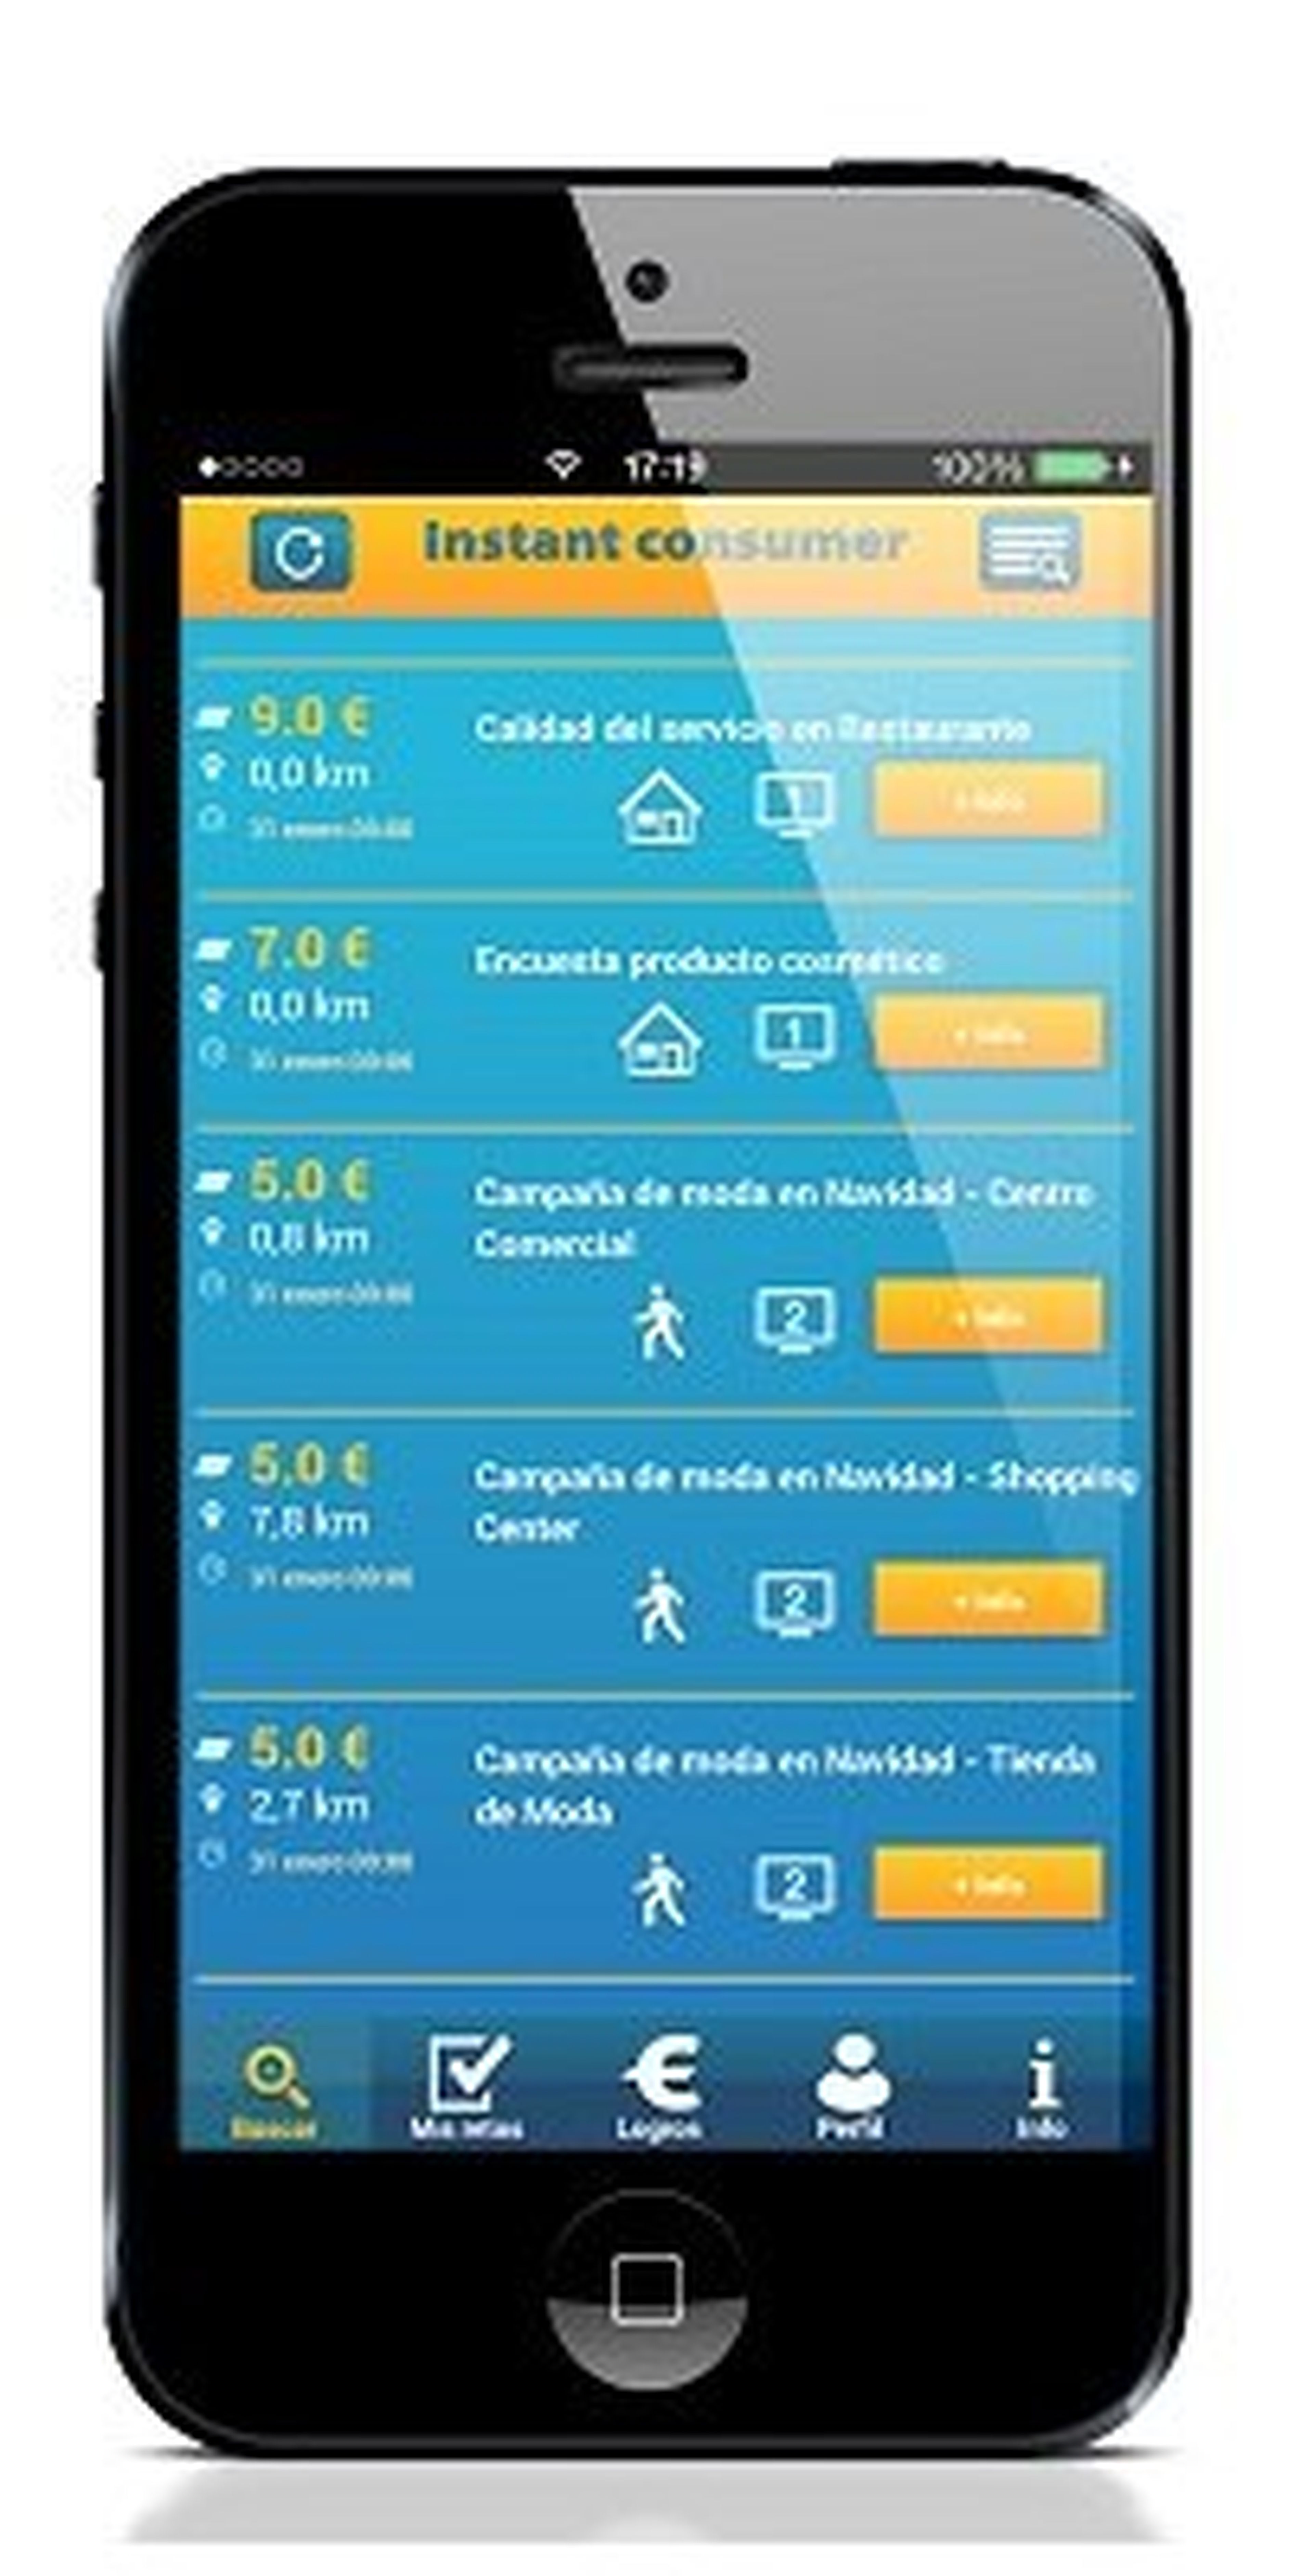 Instant Consumer, la app para ganar dinero con el smartphone